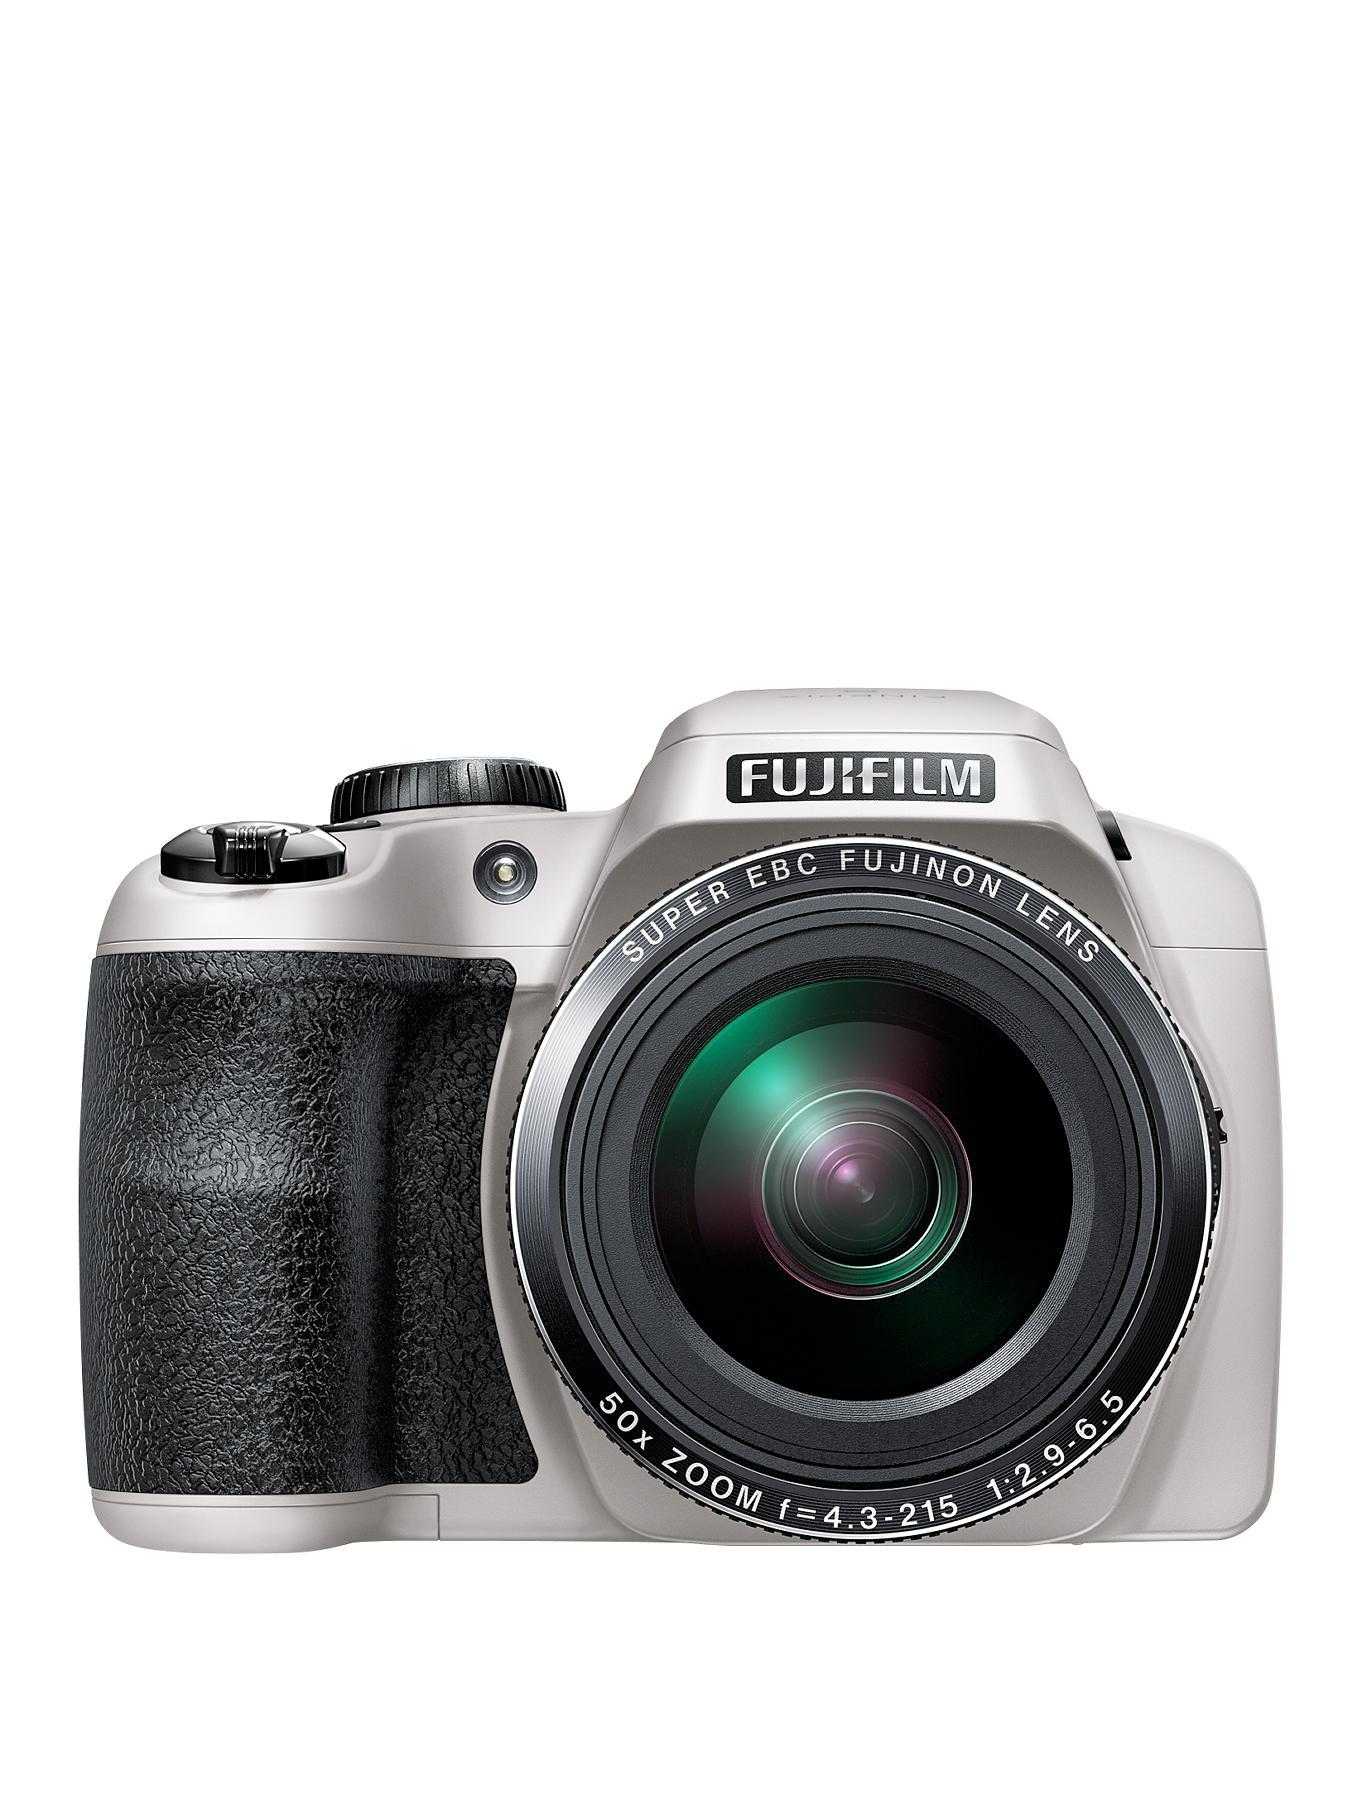 Цифровой фотоаппарат Fujifilm FinePix S8200 - подробные характеристики обзоры видео фото Цены в интернет-магазинах где можно купить цифровую фотоаппарат Fujifilm FinePix S8200